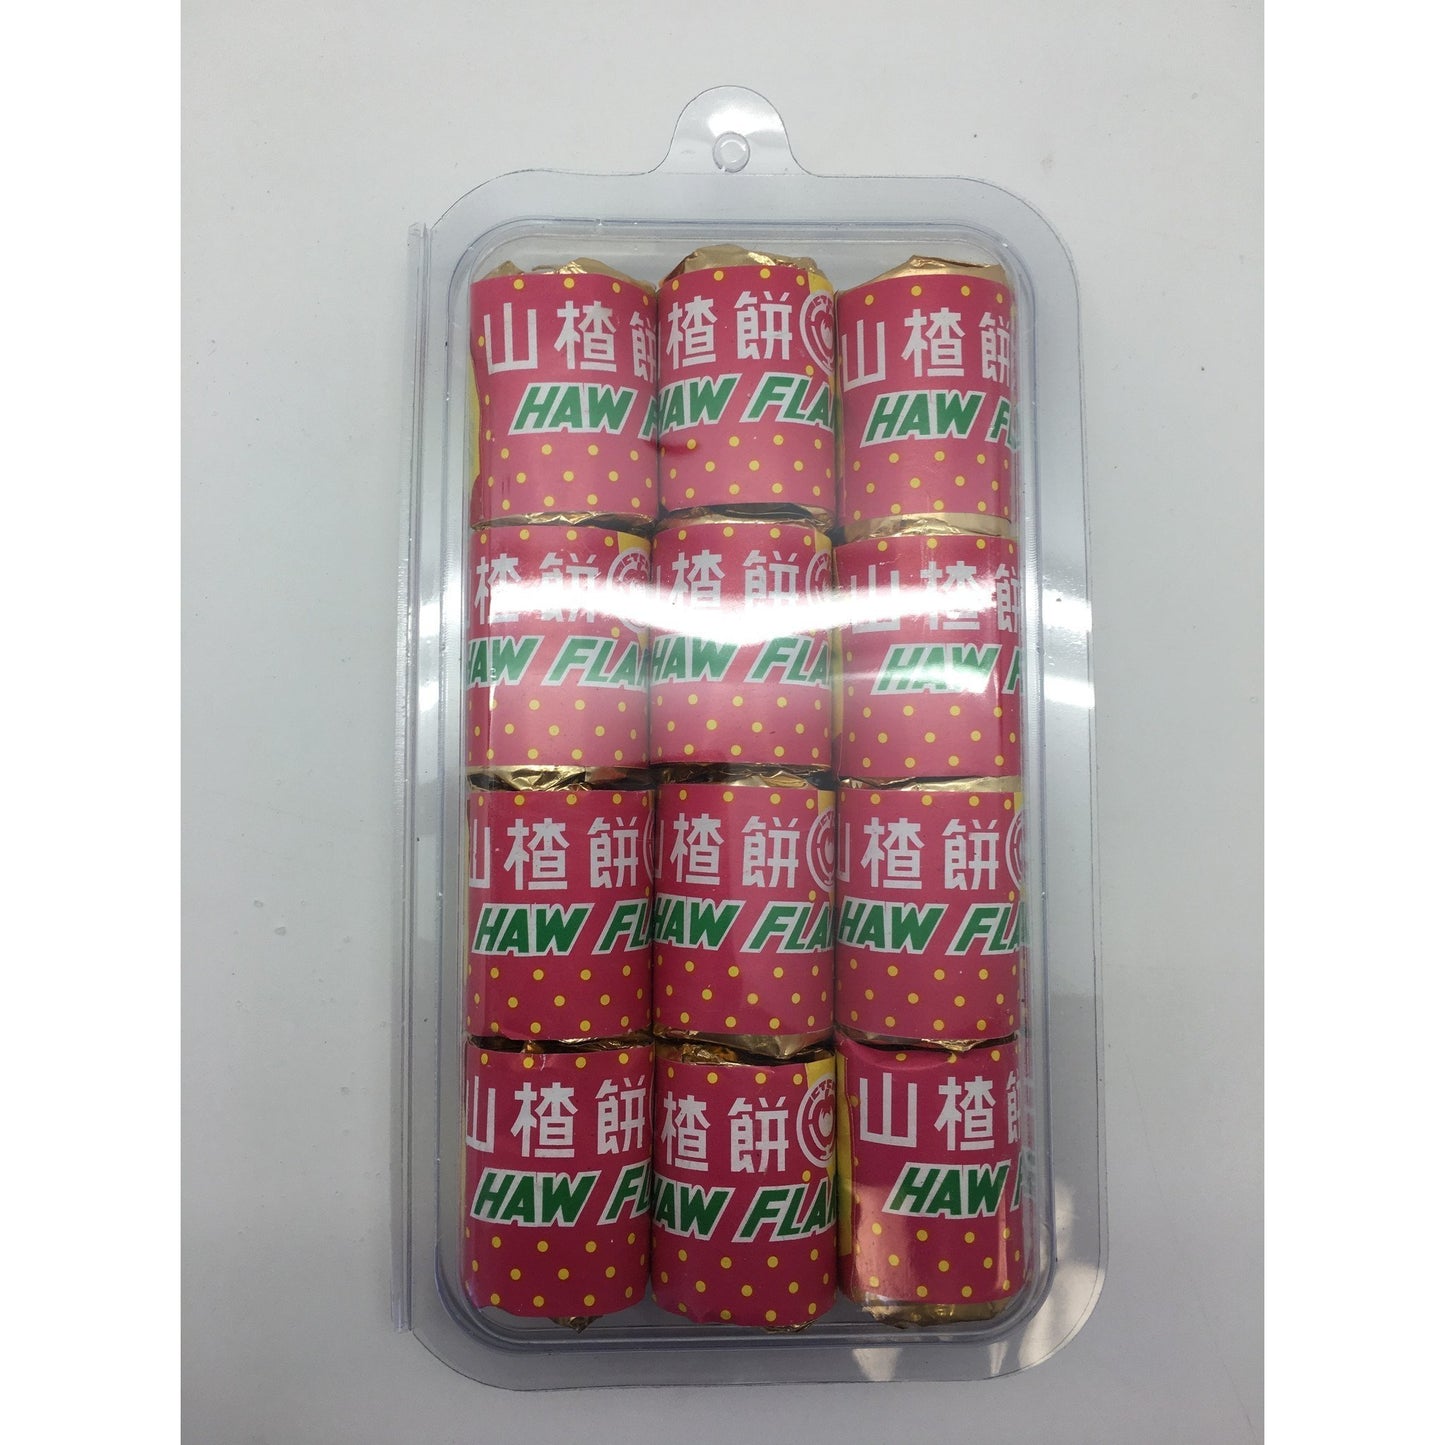 J030L Camellia Angel Brand - Haw Flake 12x27.5g - 48 box / 1 CTN - New Eastland Pty Ltd - Asian food wholesalers